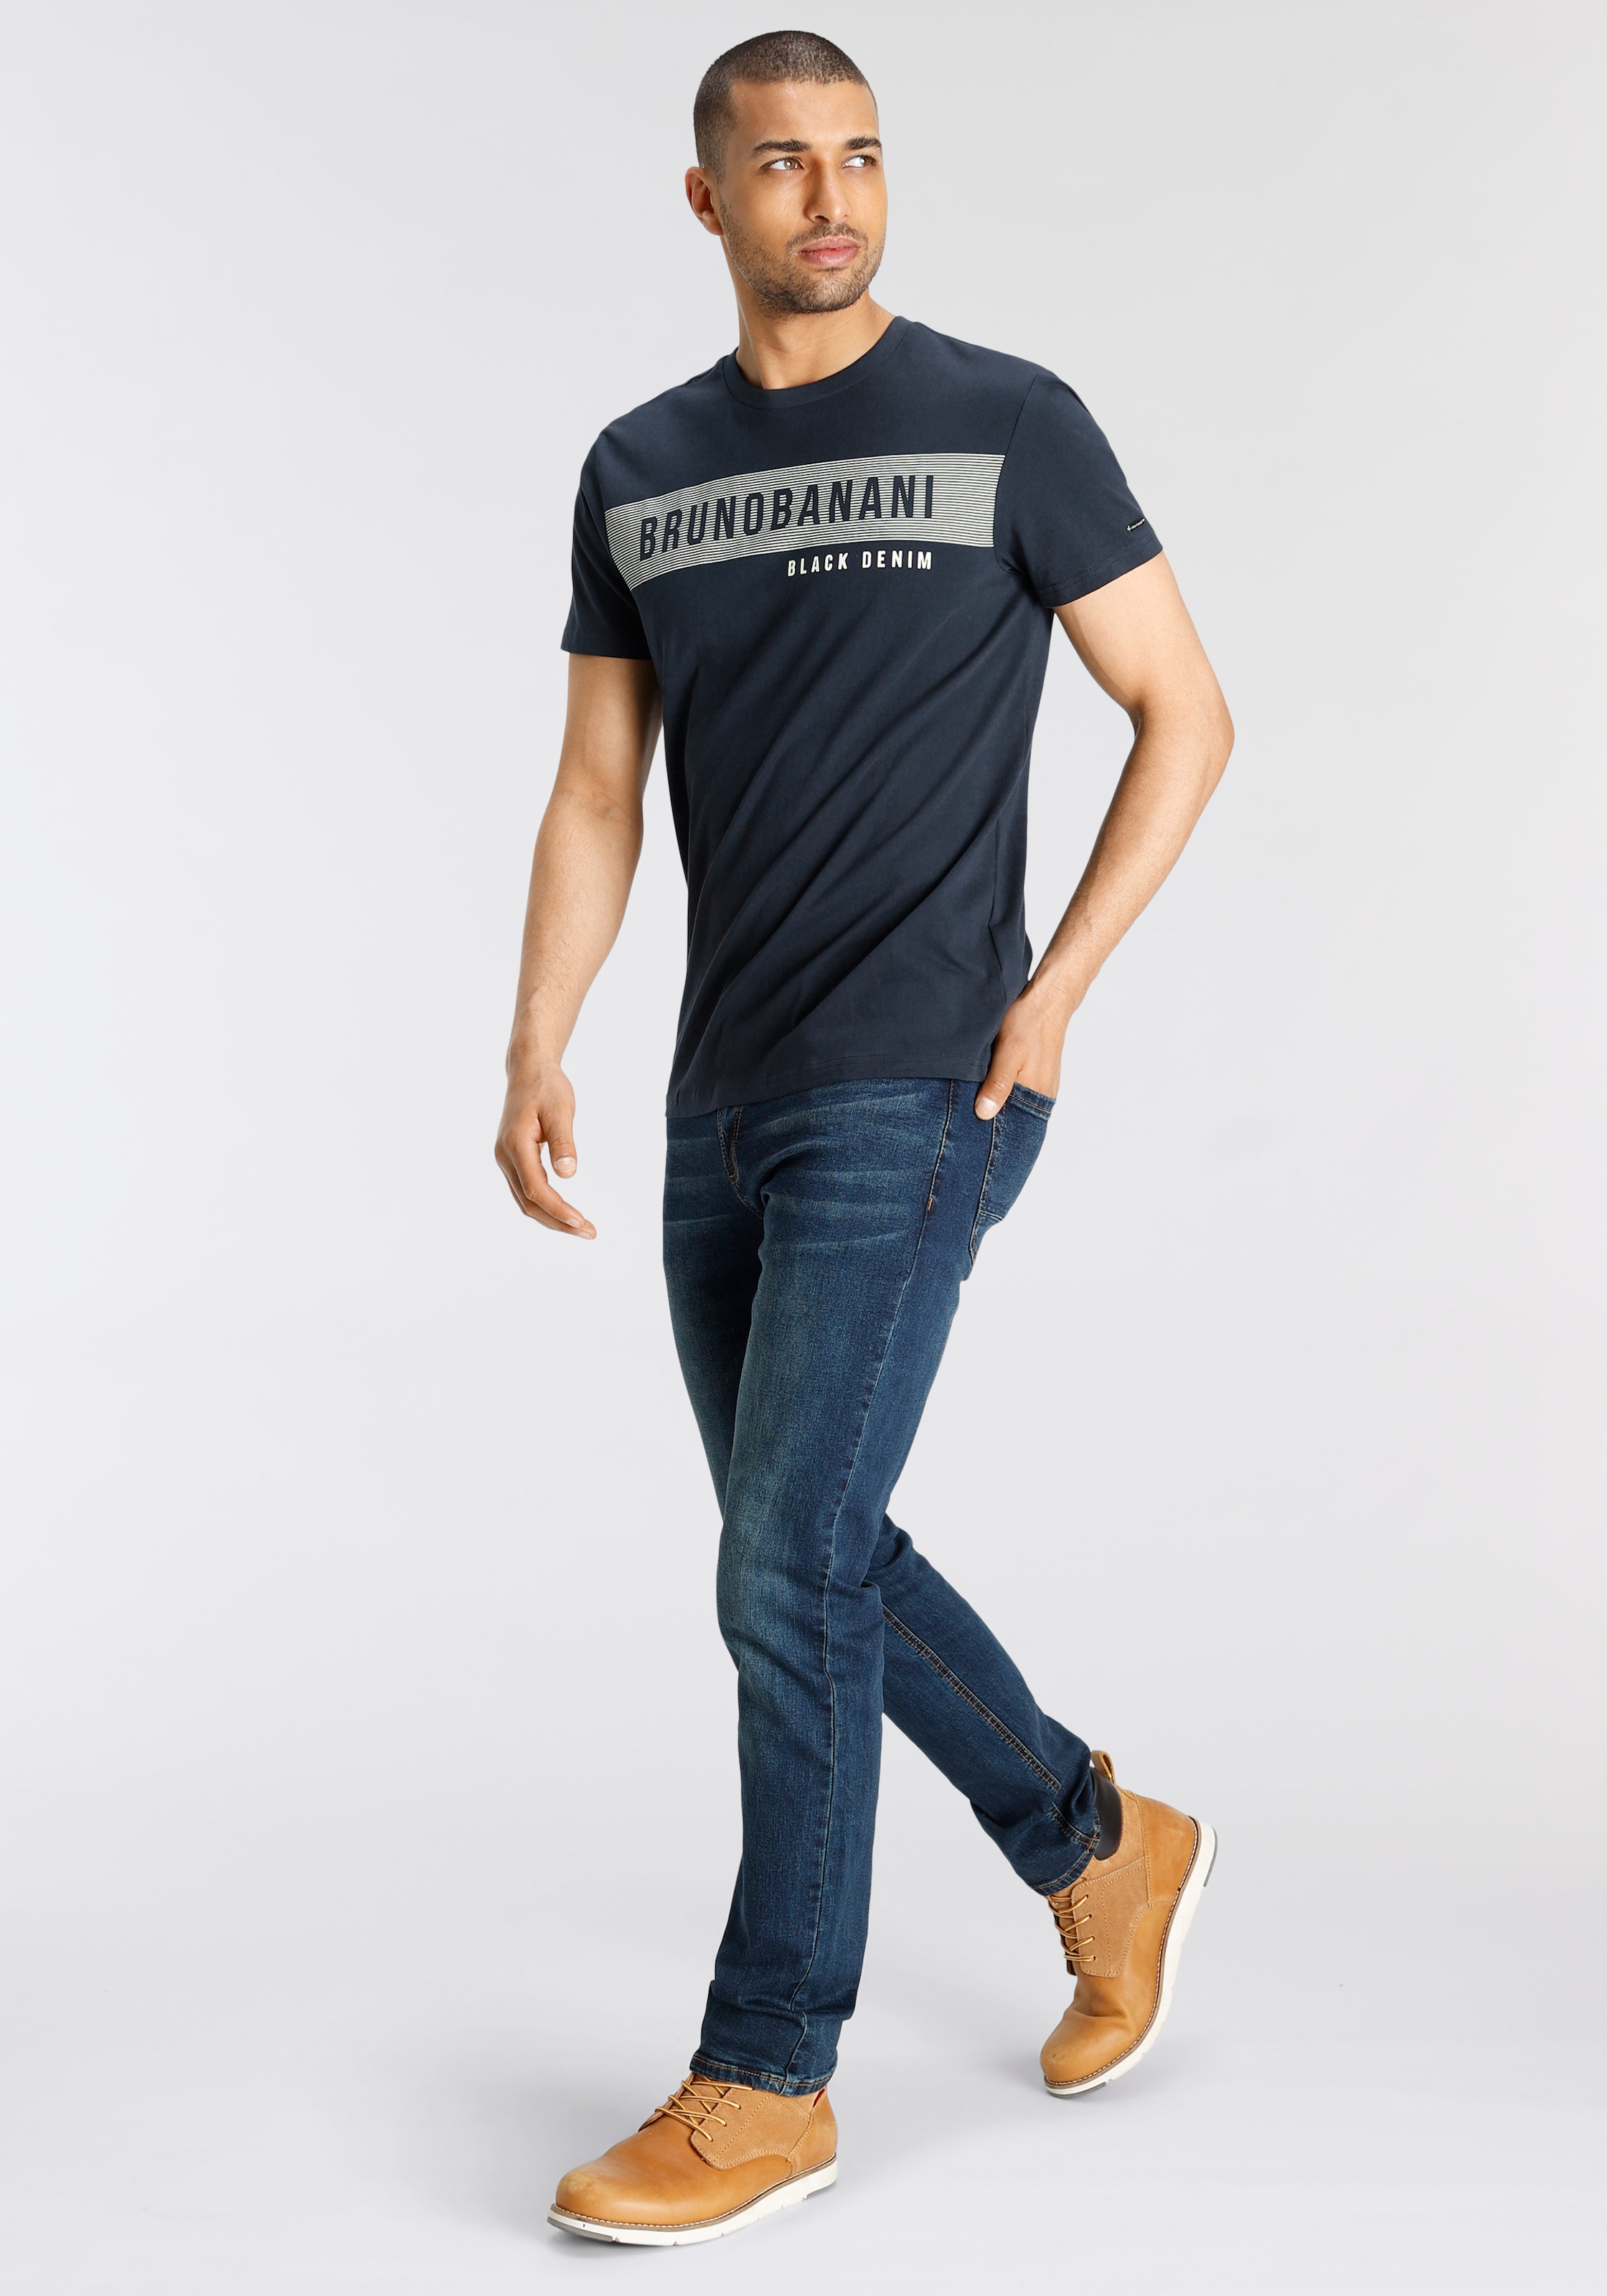 Bruno Banani T-Shirt, mit Markenprint shoppen online OTTO bei